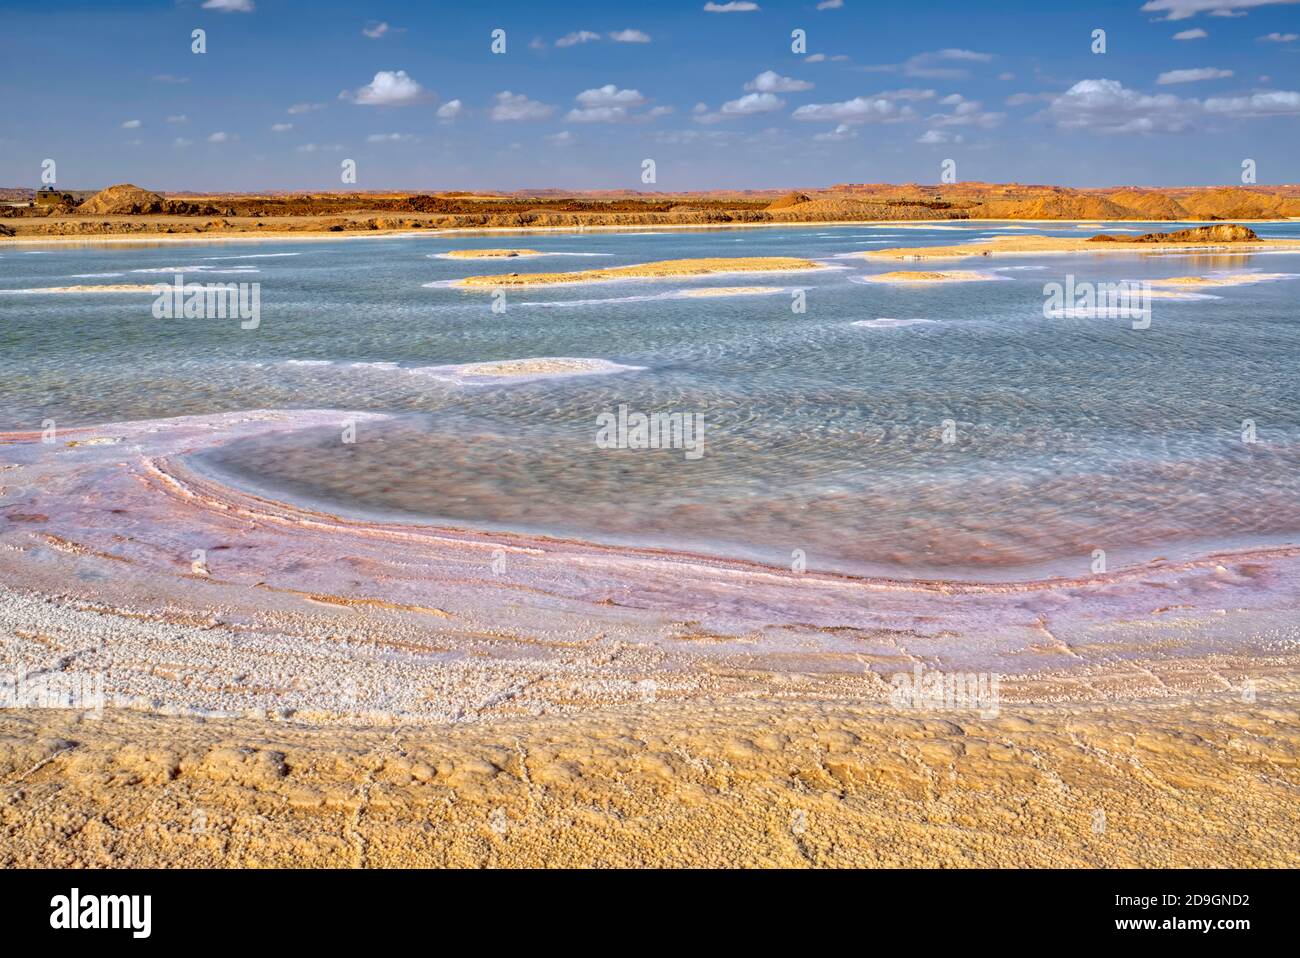 Siwa est l'une des zones les plus éloignées et les plus isolées de la pollution mondiale. Le sel extrait de Siwa est principalement connu et reconnu pour son l Banque D'Images